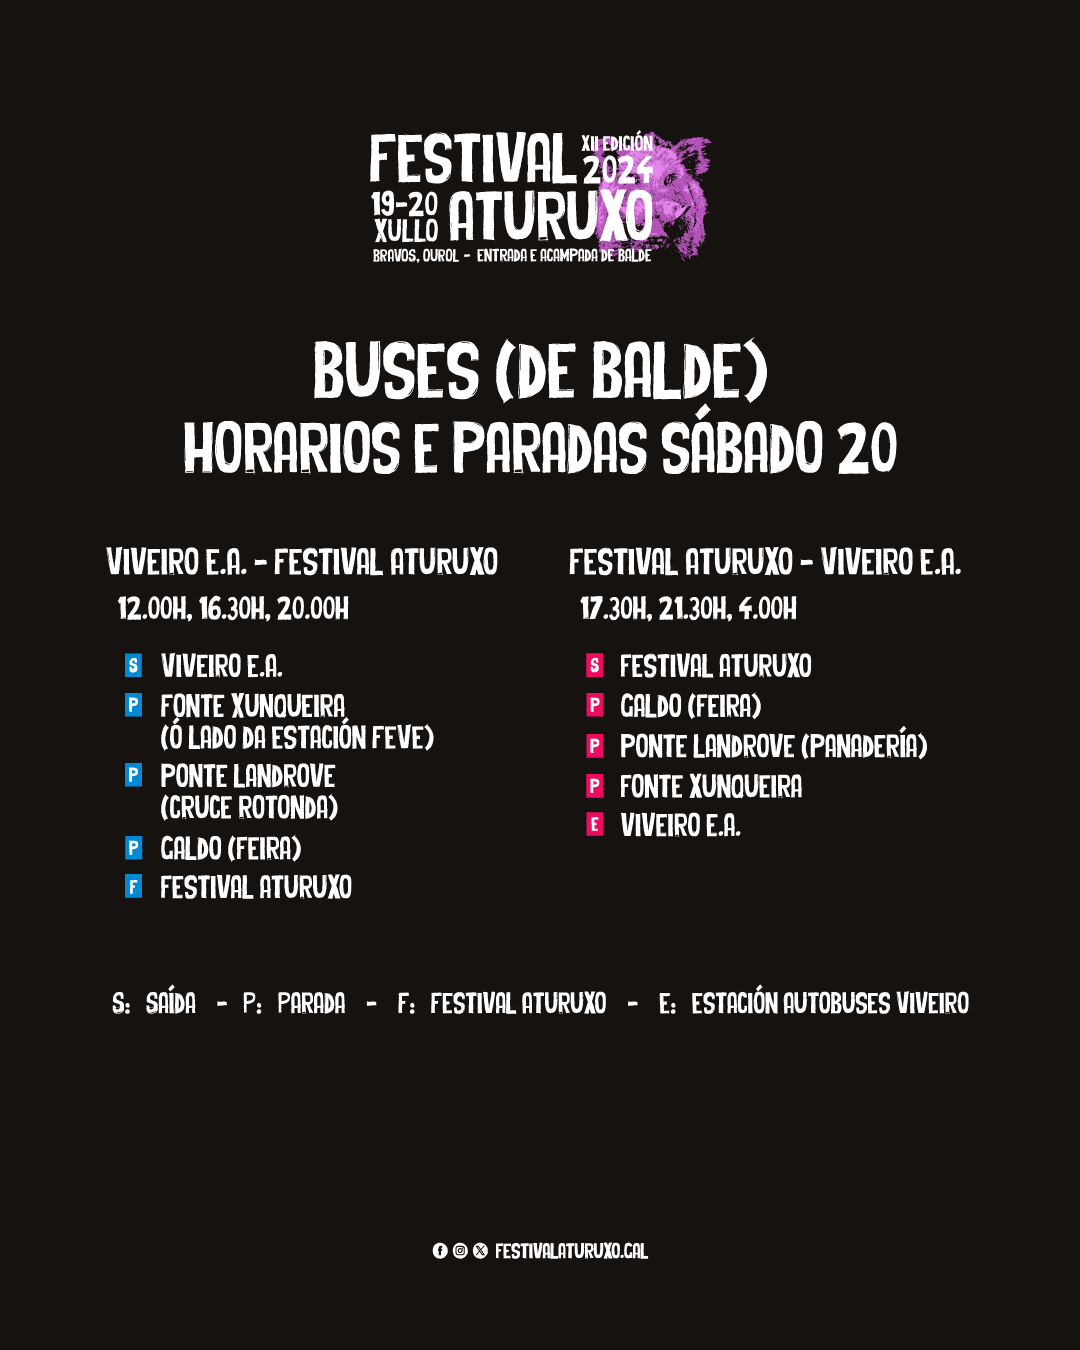 Buses (de balde): Horarios e paradas - Festival Aturuxo 2024 - XII Edición